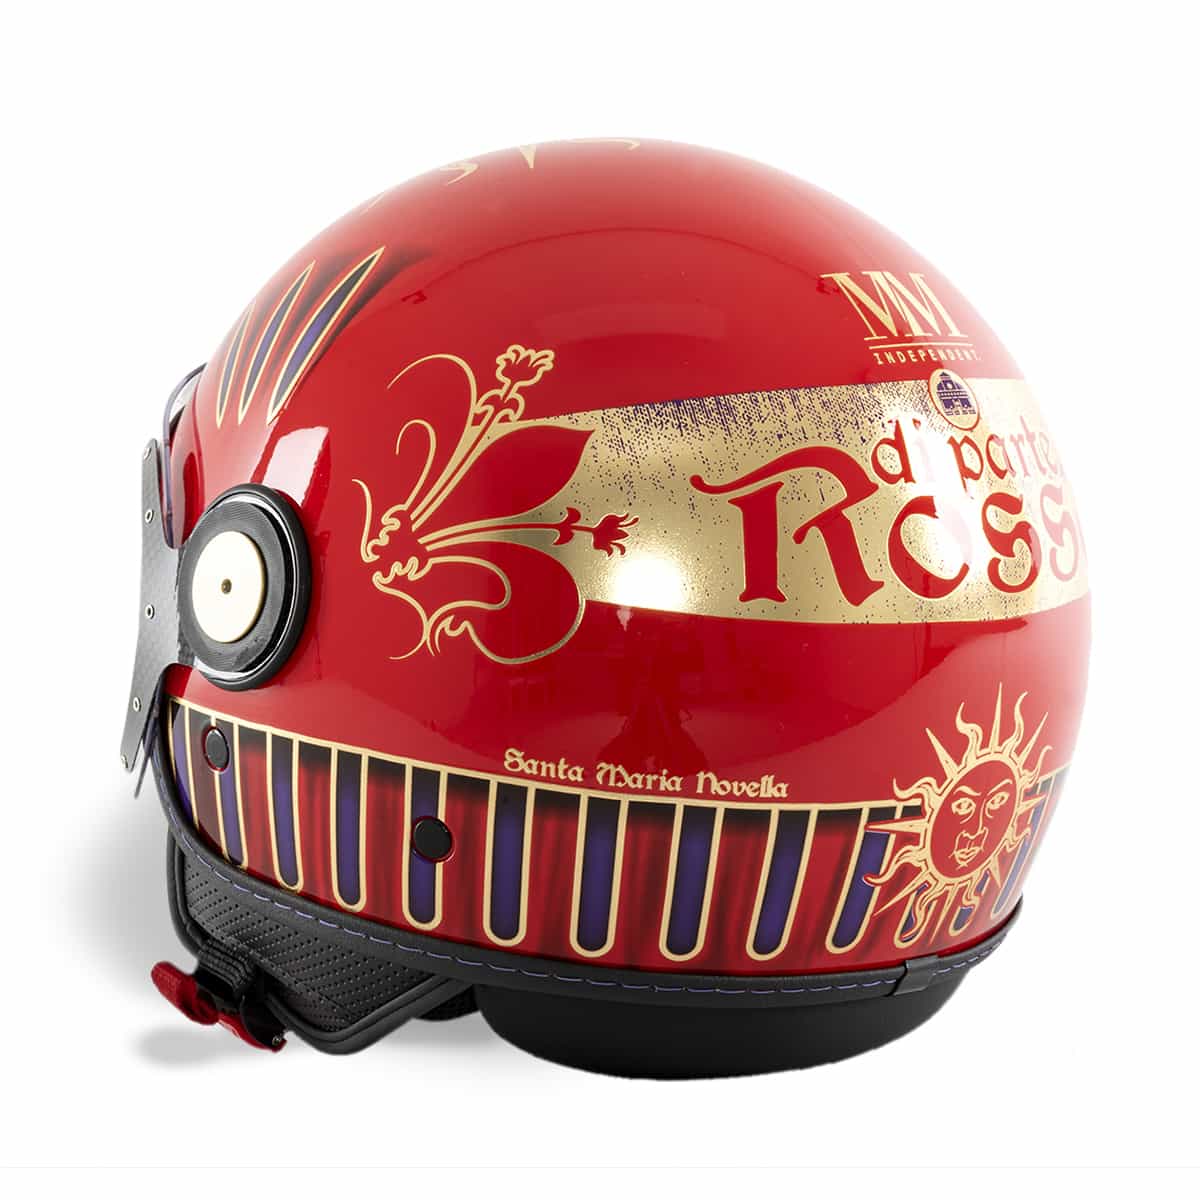 Rossi helmet left side view